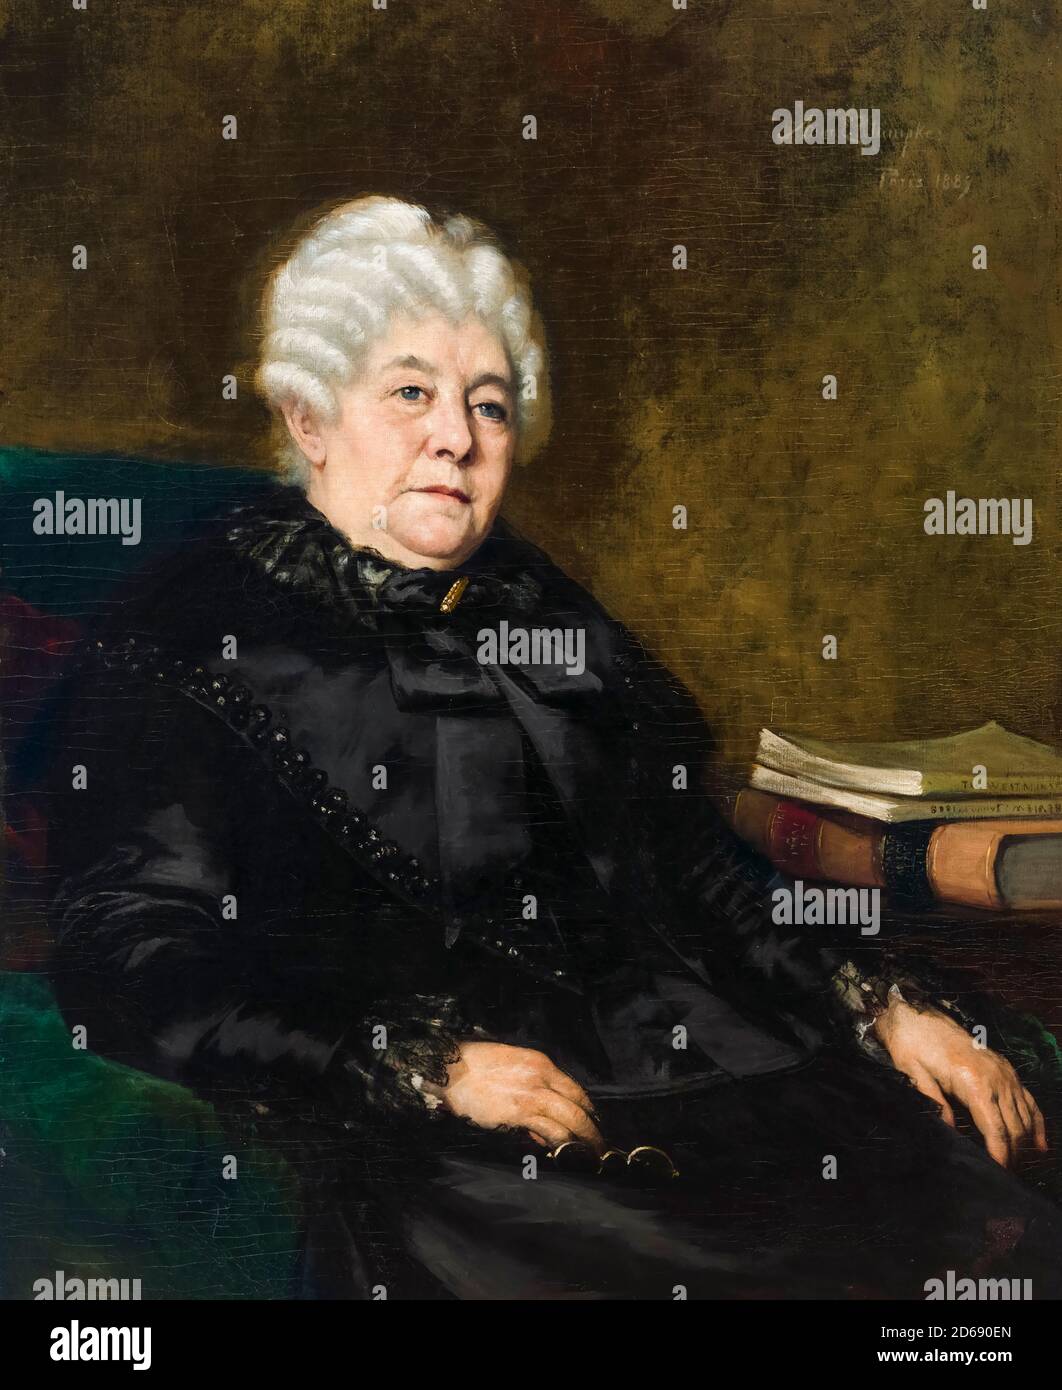 Elizabeth Cady Stanton (1815-1902), líder estadounidense del movimiento por los derechos de las mujeres, retrato de Anna Elizabeth Klumpke, 1889 Foto de stock